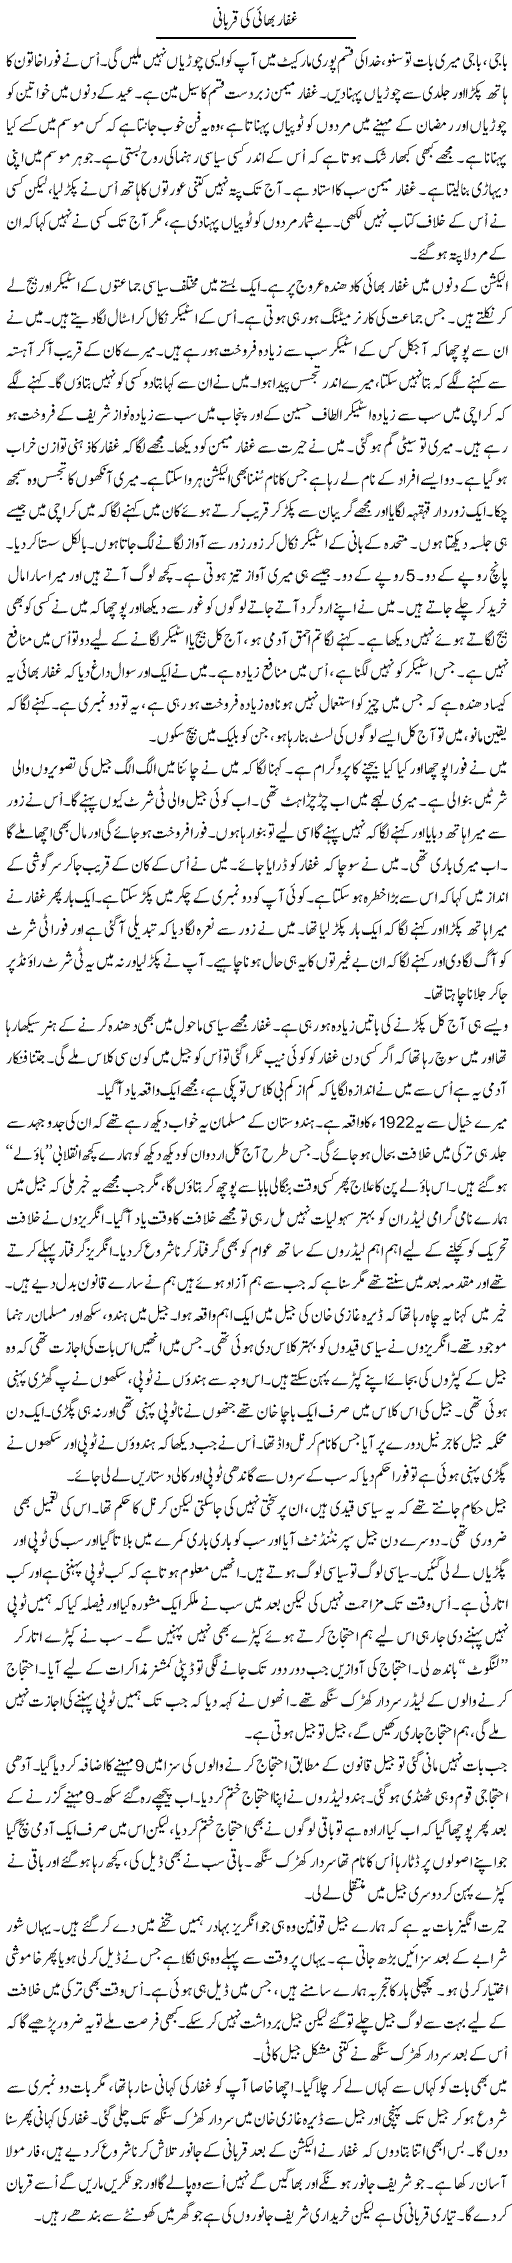 Ghaffar Bhai Ki Qurbani | Anees Mansori | Daily Urdu Columns